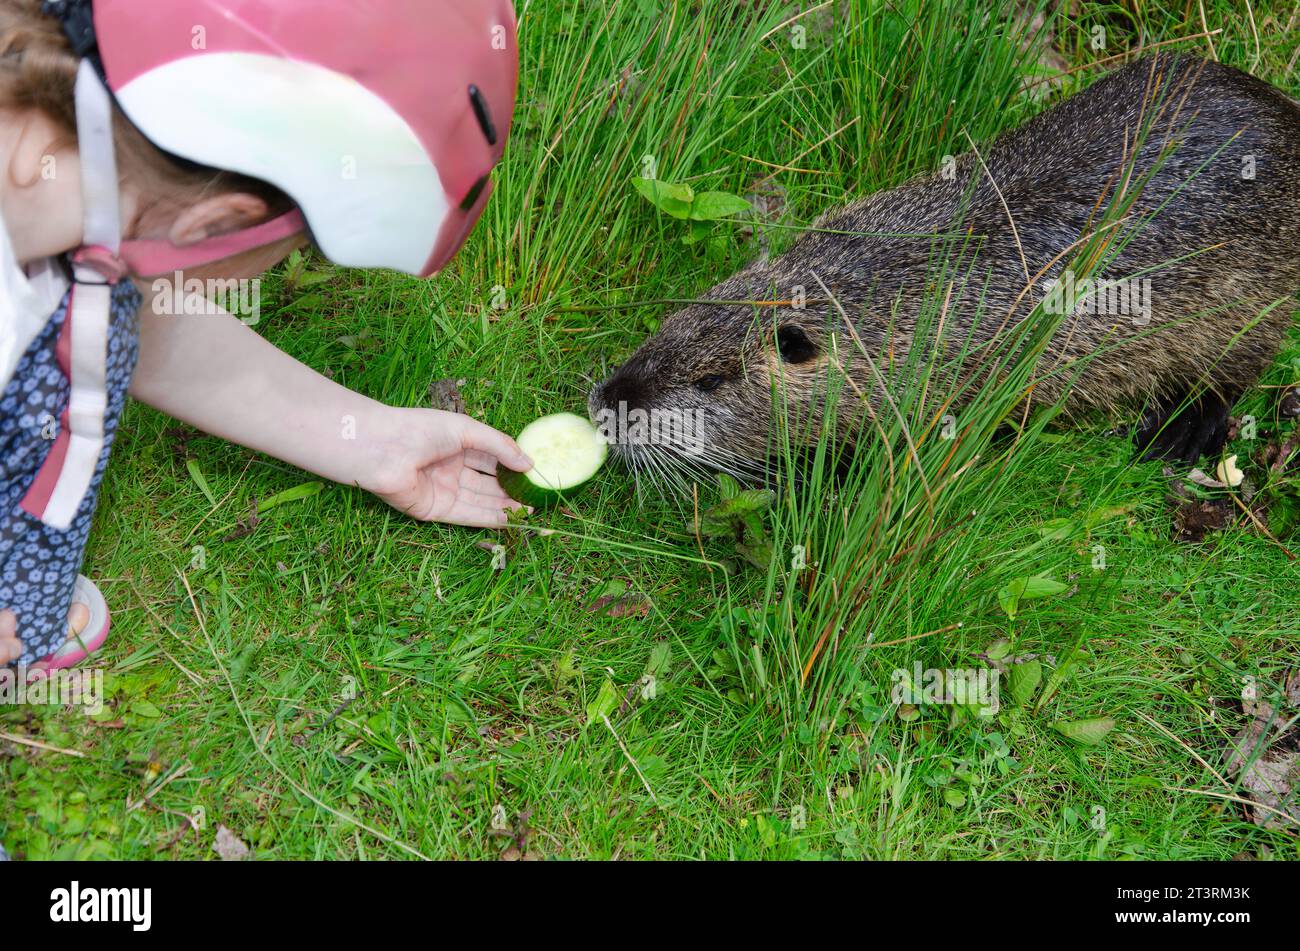 la bambina sta dando da mangiare a un castoro nero, a un topo o a una nutria. il bambino indossa un casco da bicicletta. Nutria seduta su erba verde Foto Stock